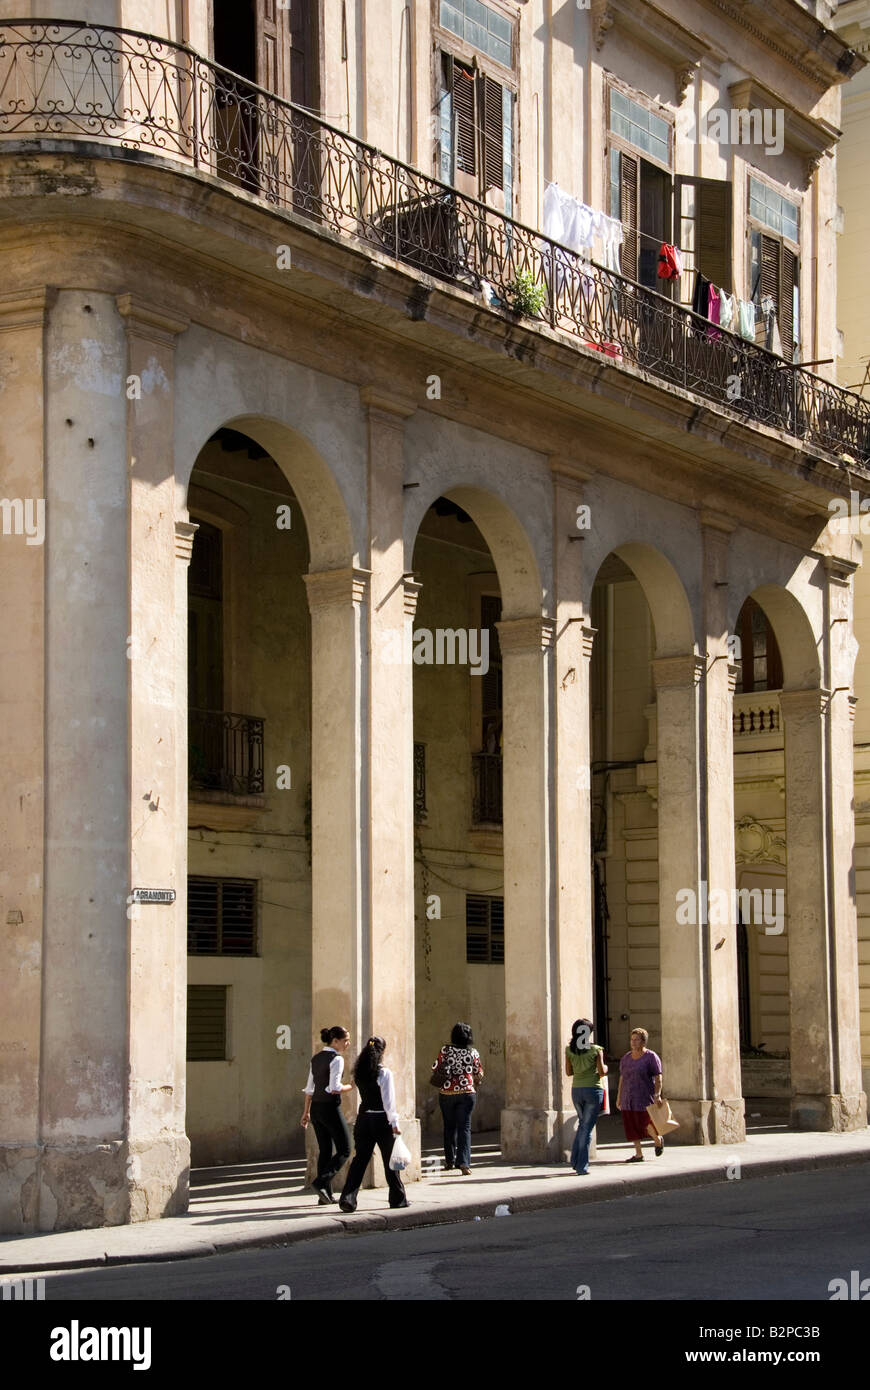 Straßenszene mit alten kolonialen Architektur in La Habana Vieja Havanna Kuba Stockfoto